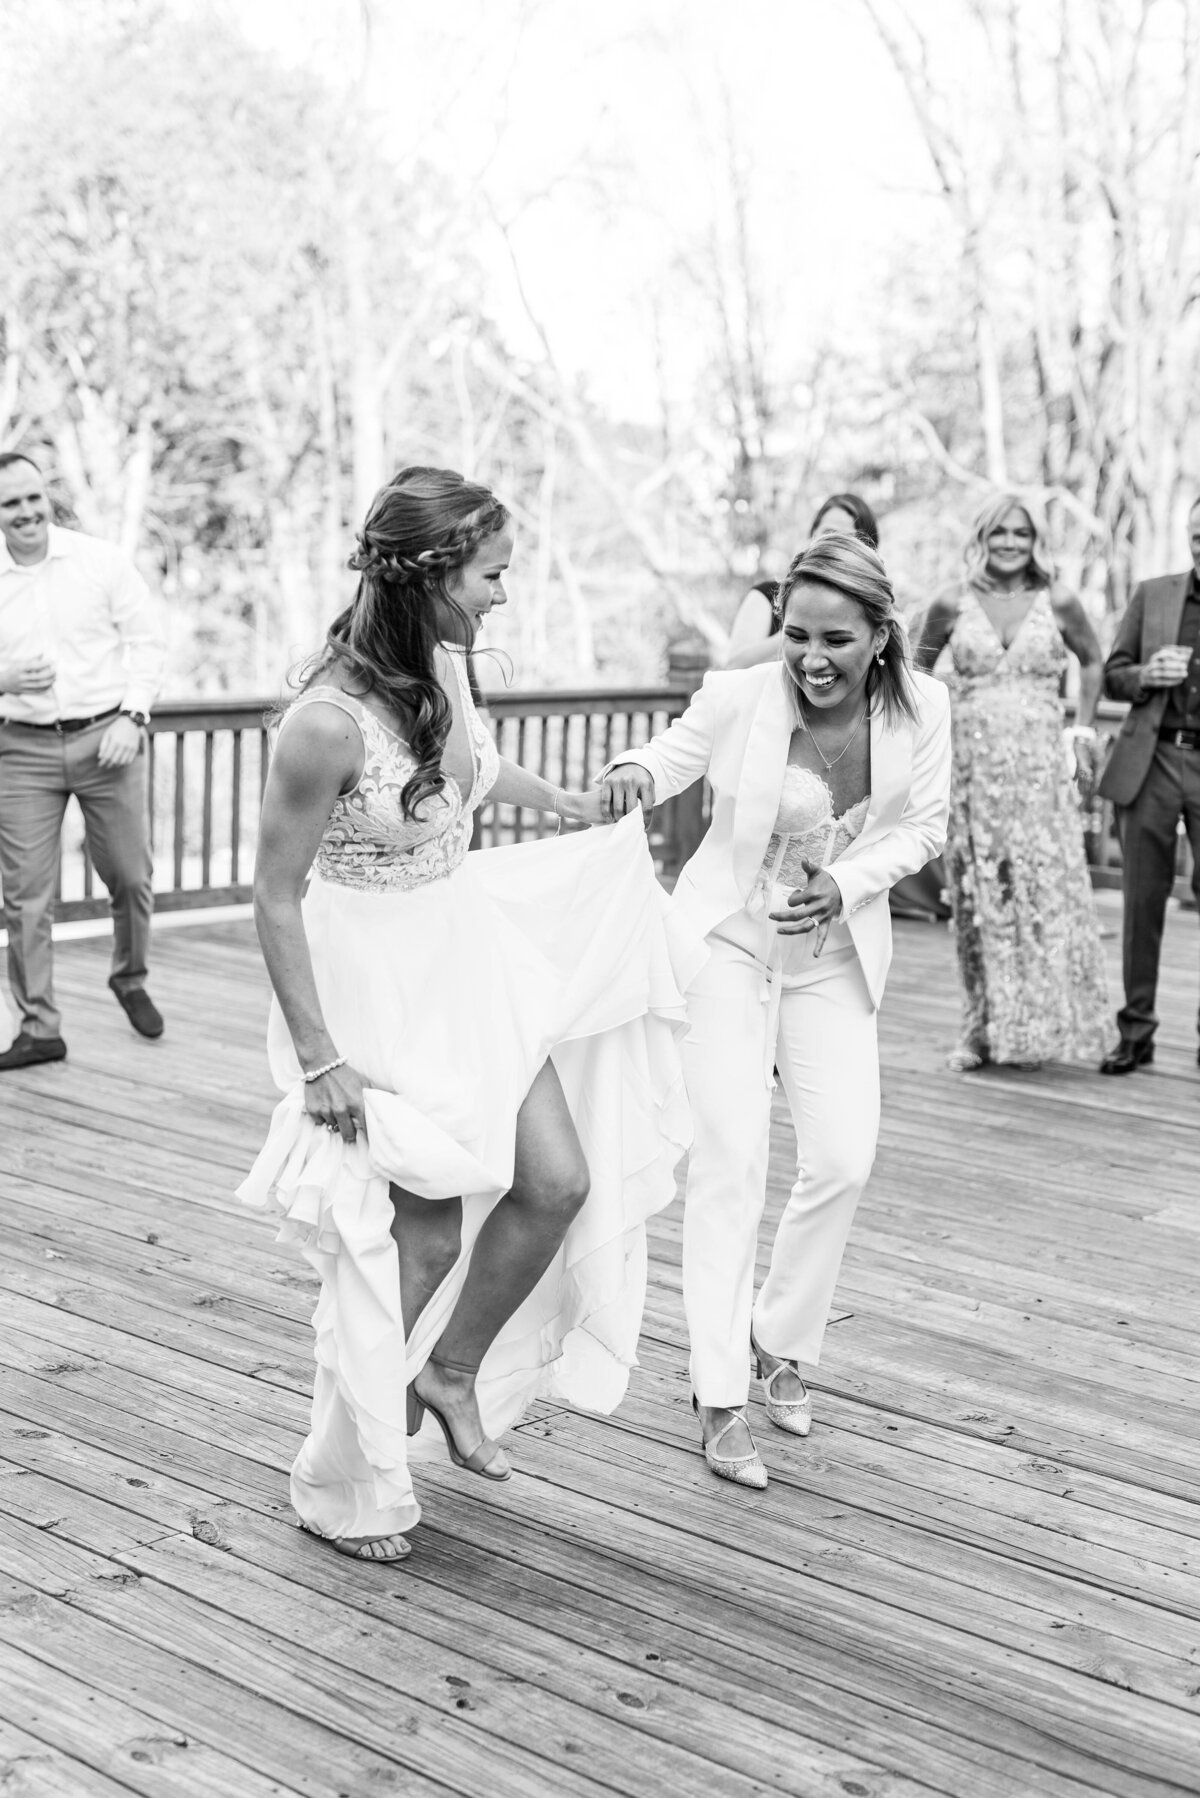 Bride and Bride dancing